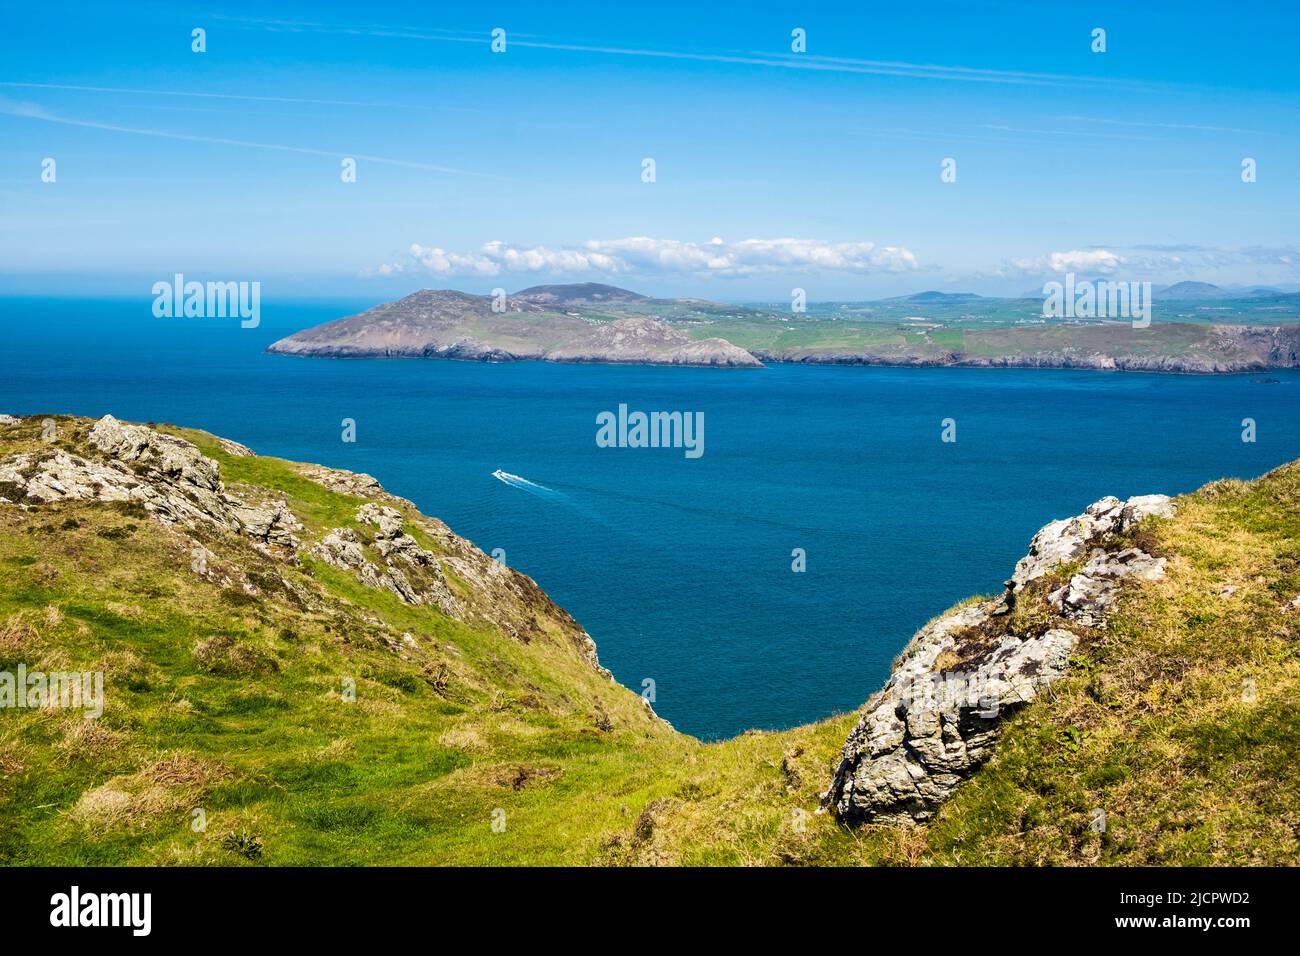 View across calm blue sea to Llyn Peninsula from Mynydd Enlli mountain on Ynys Enlli or Bardsey Island on Welsh west coast.  Gwynedd, north Wales, UK Stock Photo